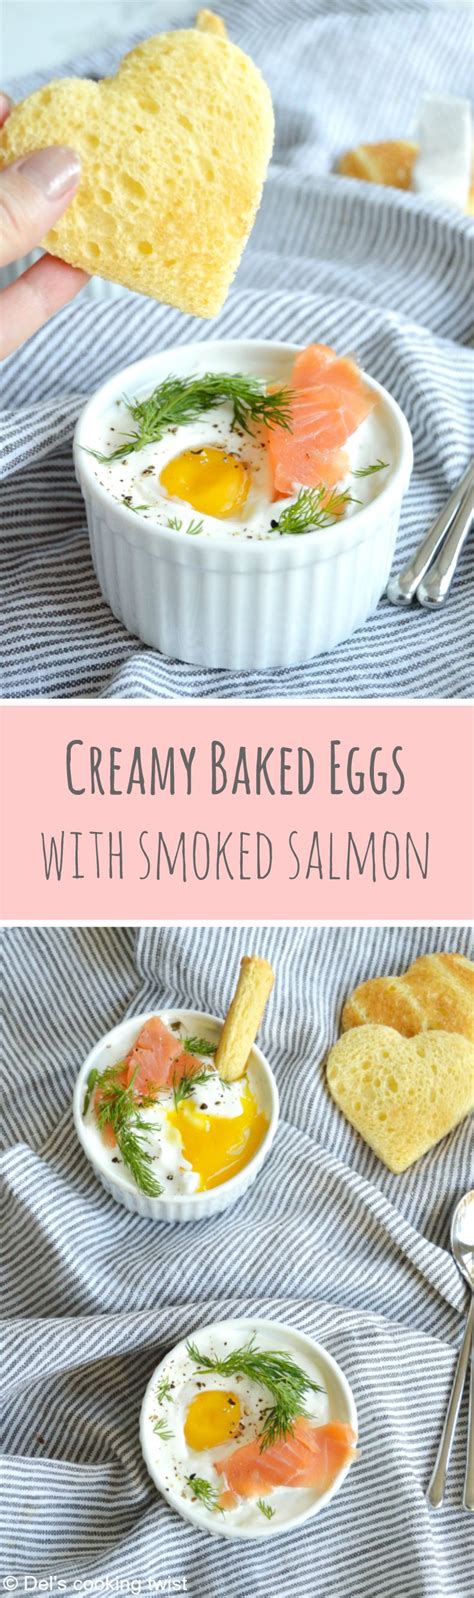 easy french baked eggs  smoked salmon   elegant